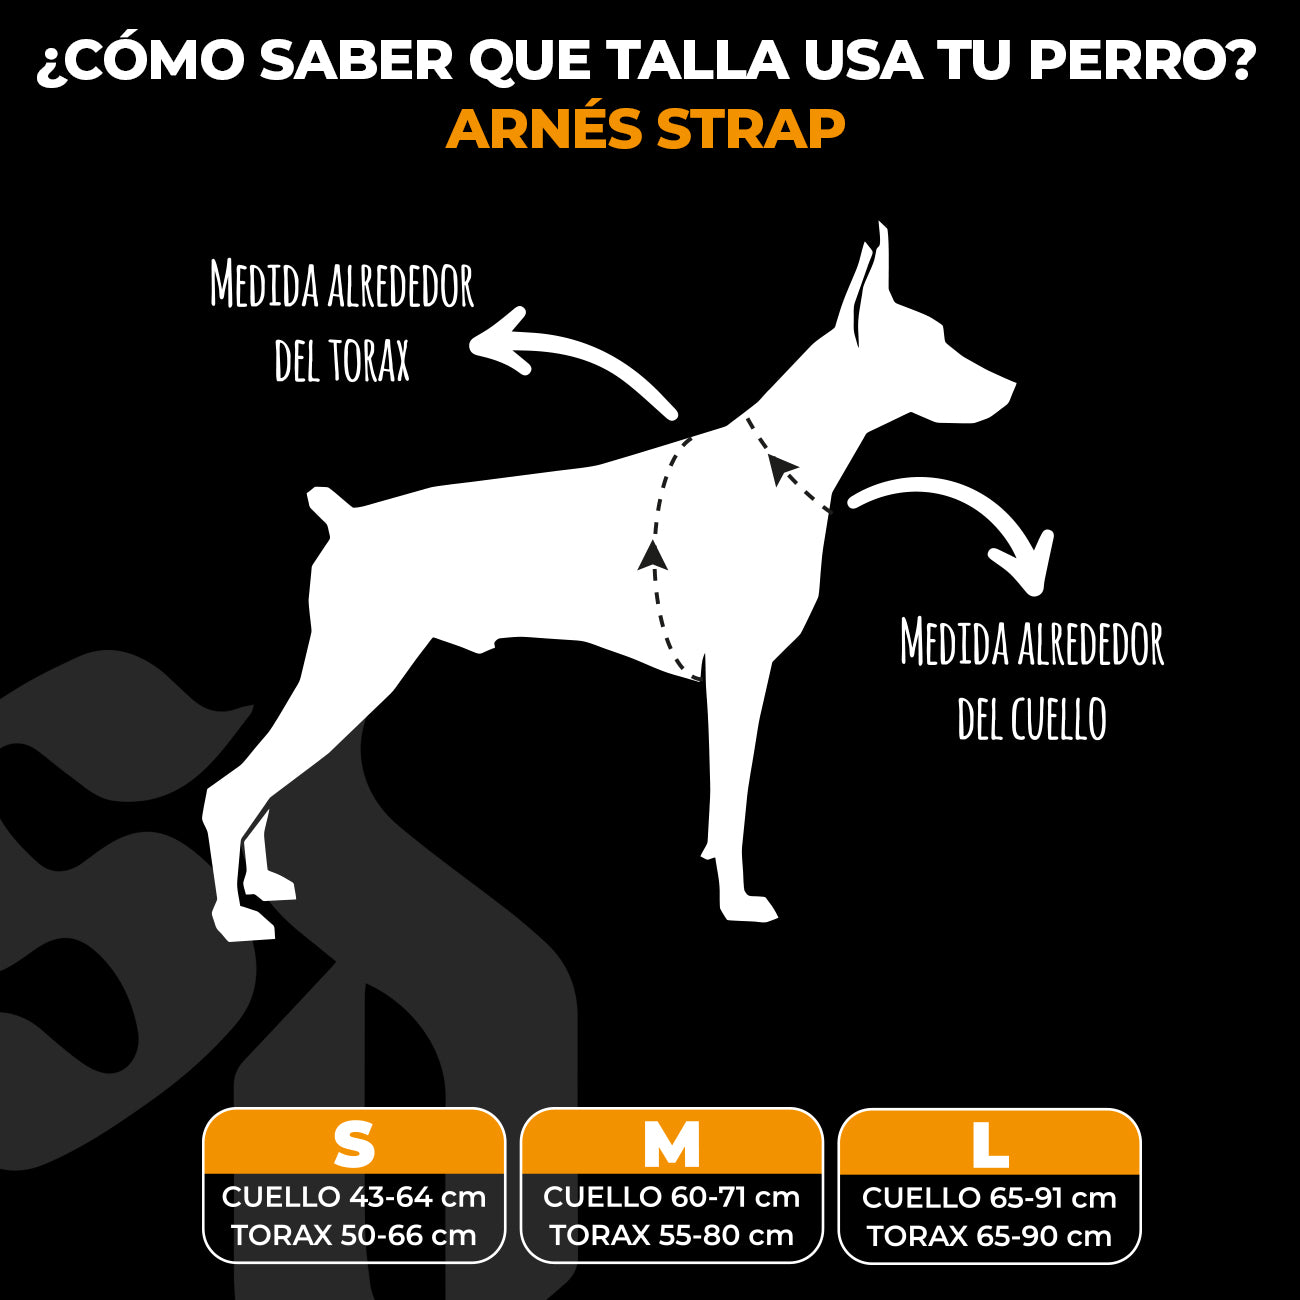 Arnés Strap para Perros - MODELO ANTIGUO - Street Dogs - Black